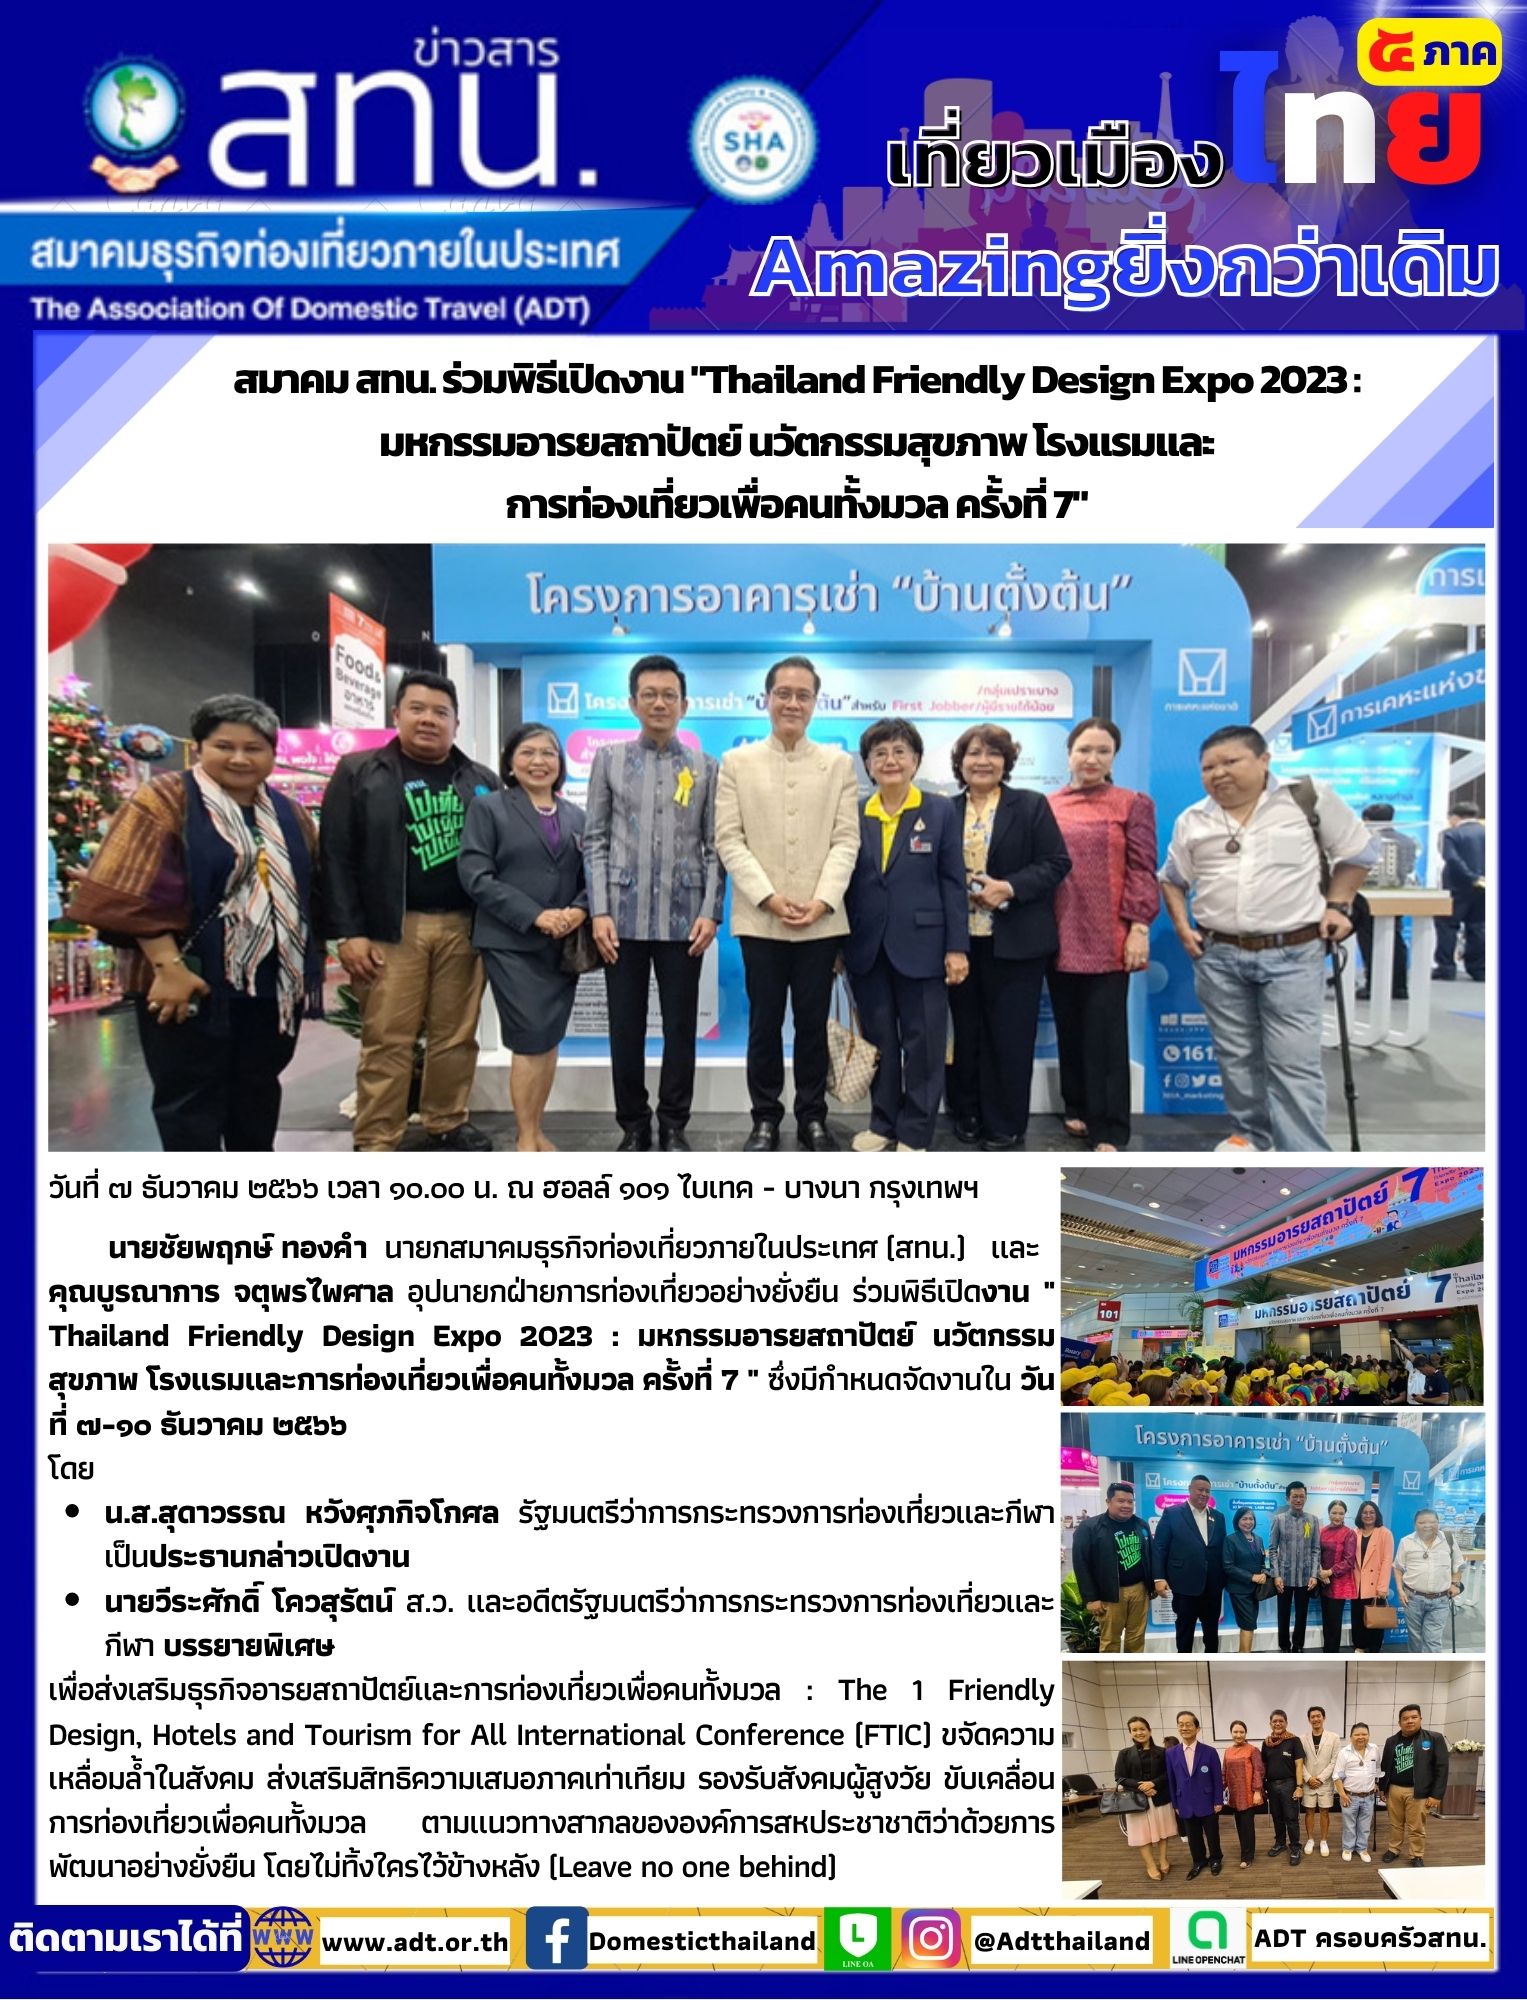 สทน. ร่วมพิธีเปิดงาน Thailand Friendly Design Expo 2023 : มหกรรมอารยสถาปัตย์ นวัตกรรมสุขภาพ โรงแรมและ การท่องเที่ยวเพื่อคนทั้งมวล ครั้งที่ 7